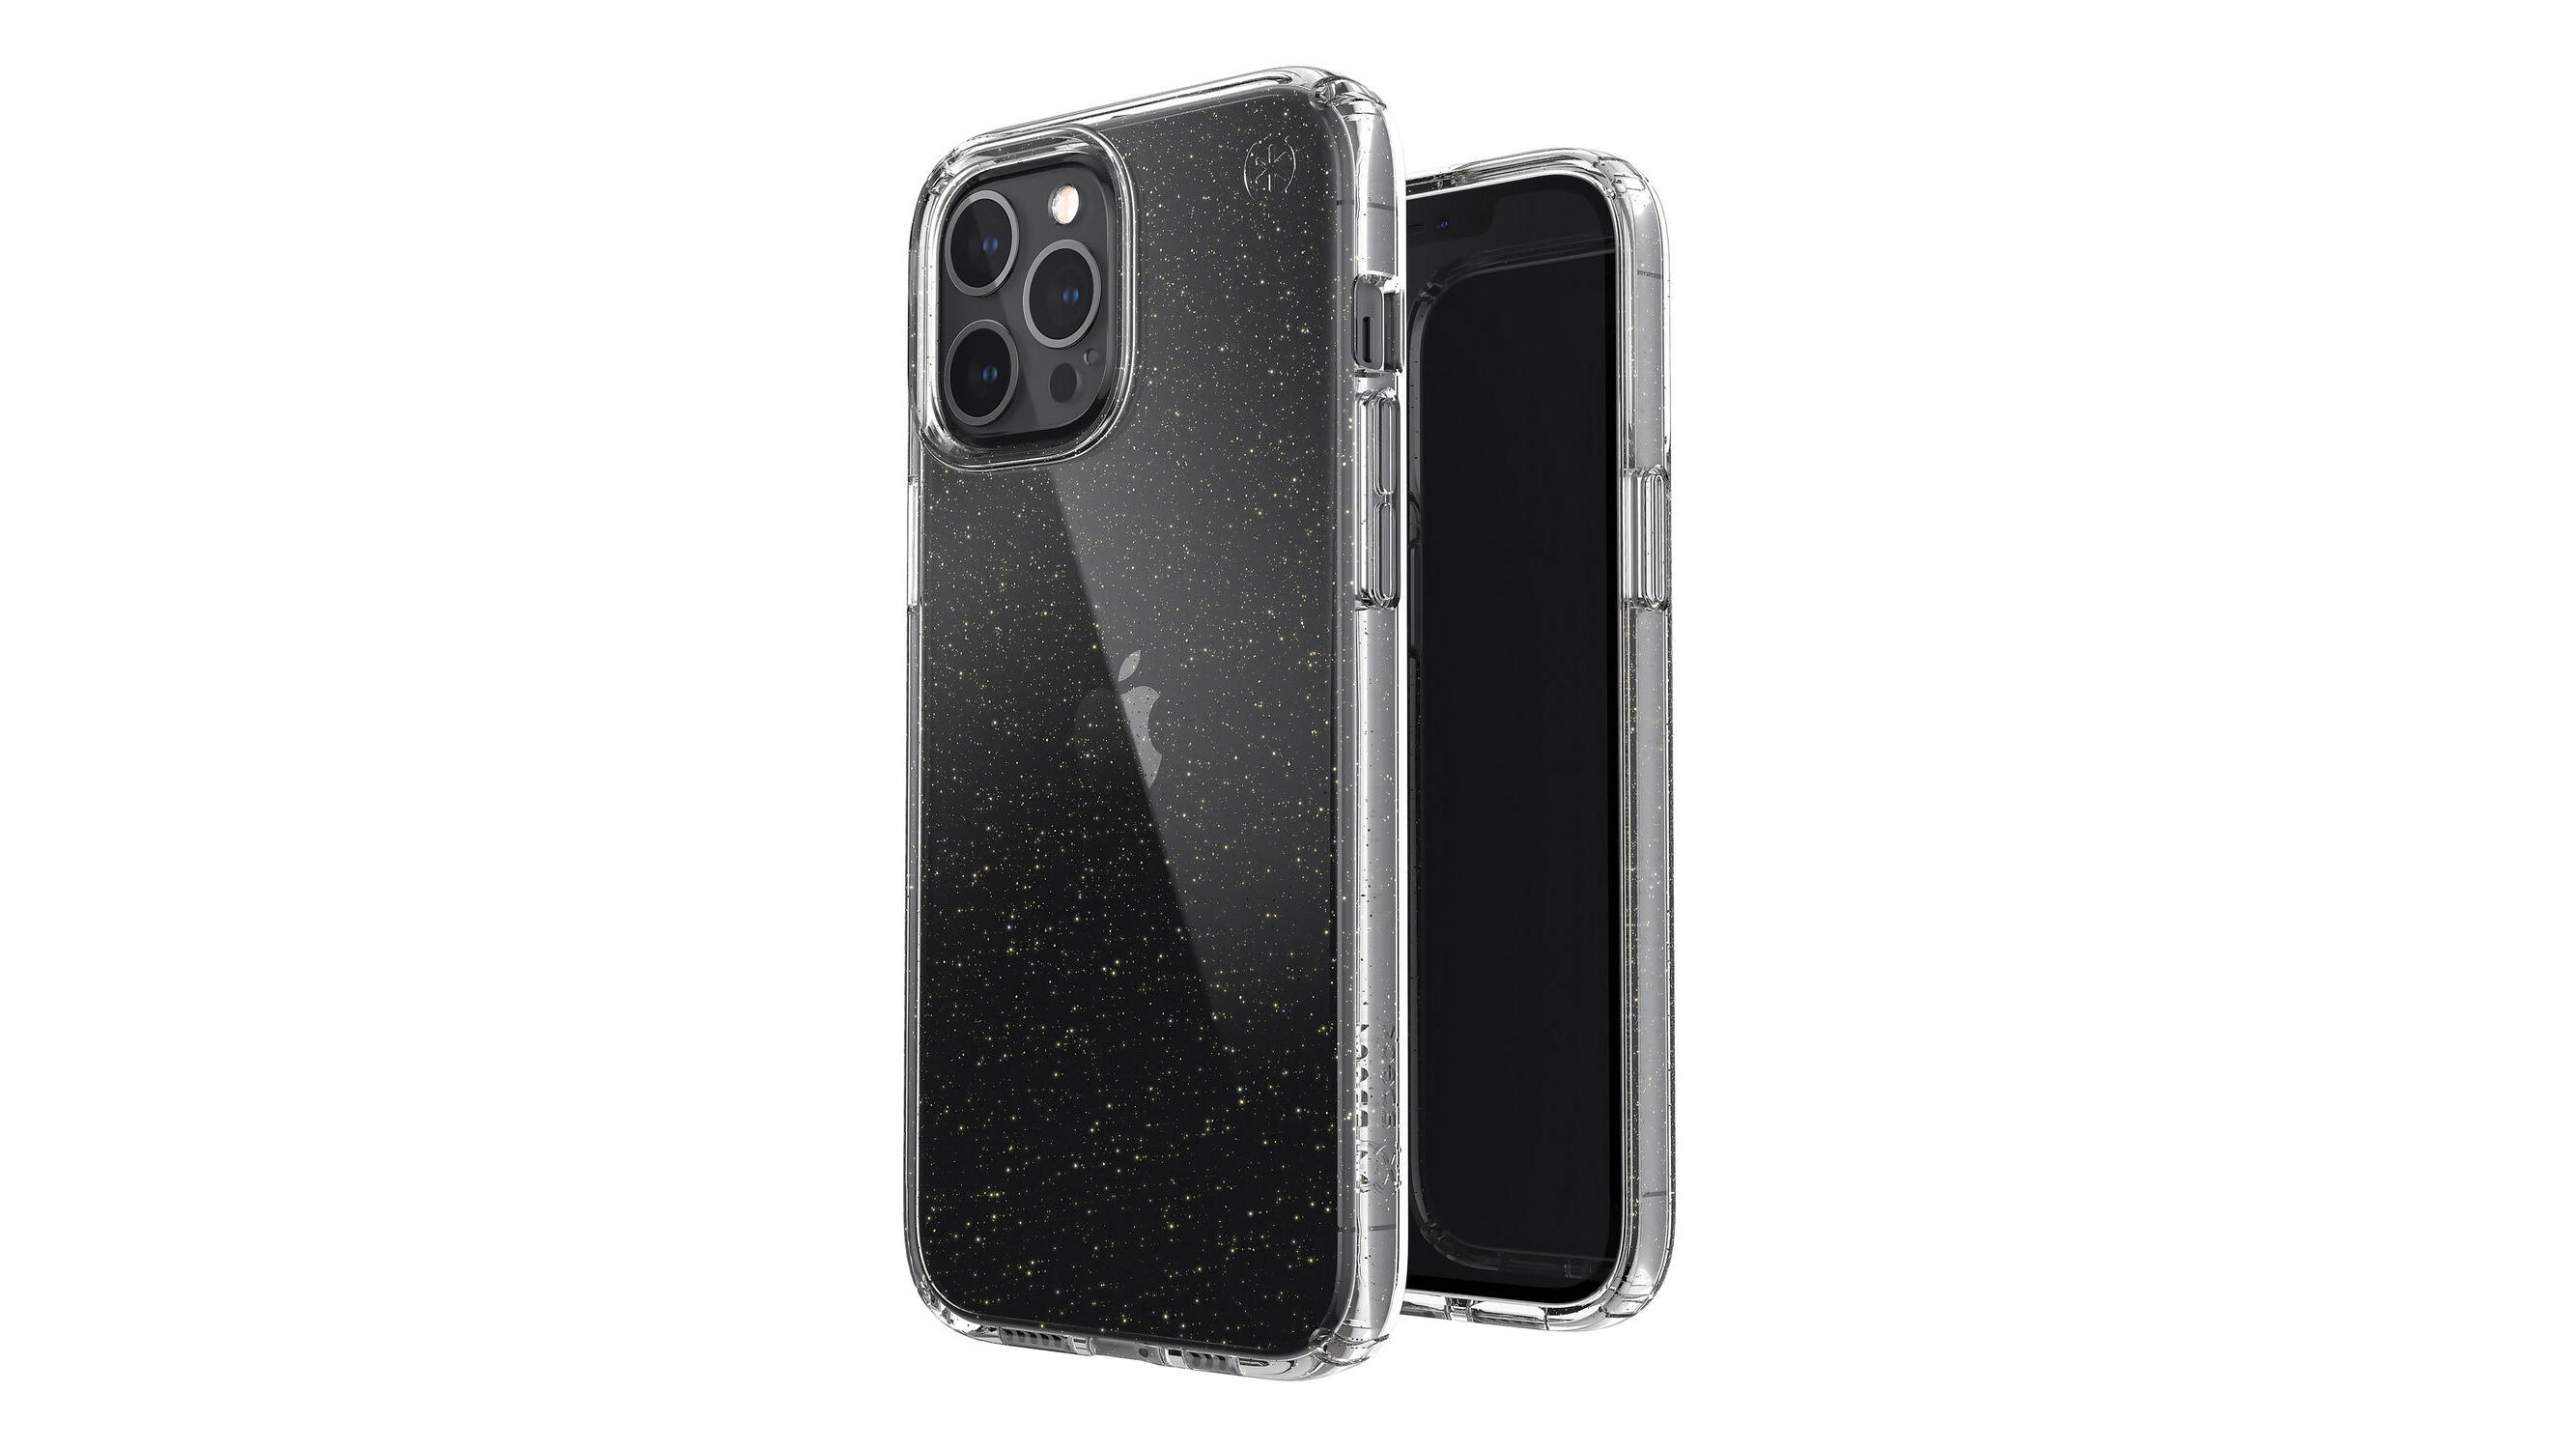 Speck Presidio Perfect-Clear iPhone 12 Pro Max case